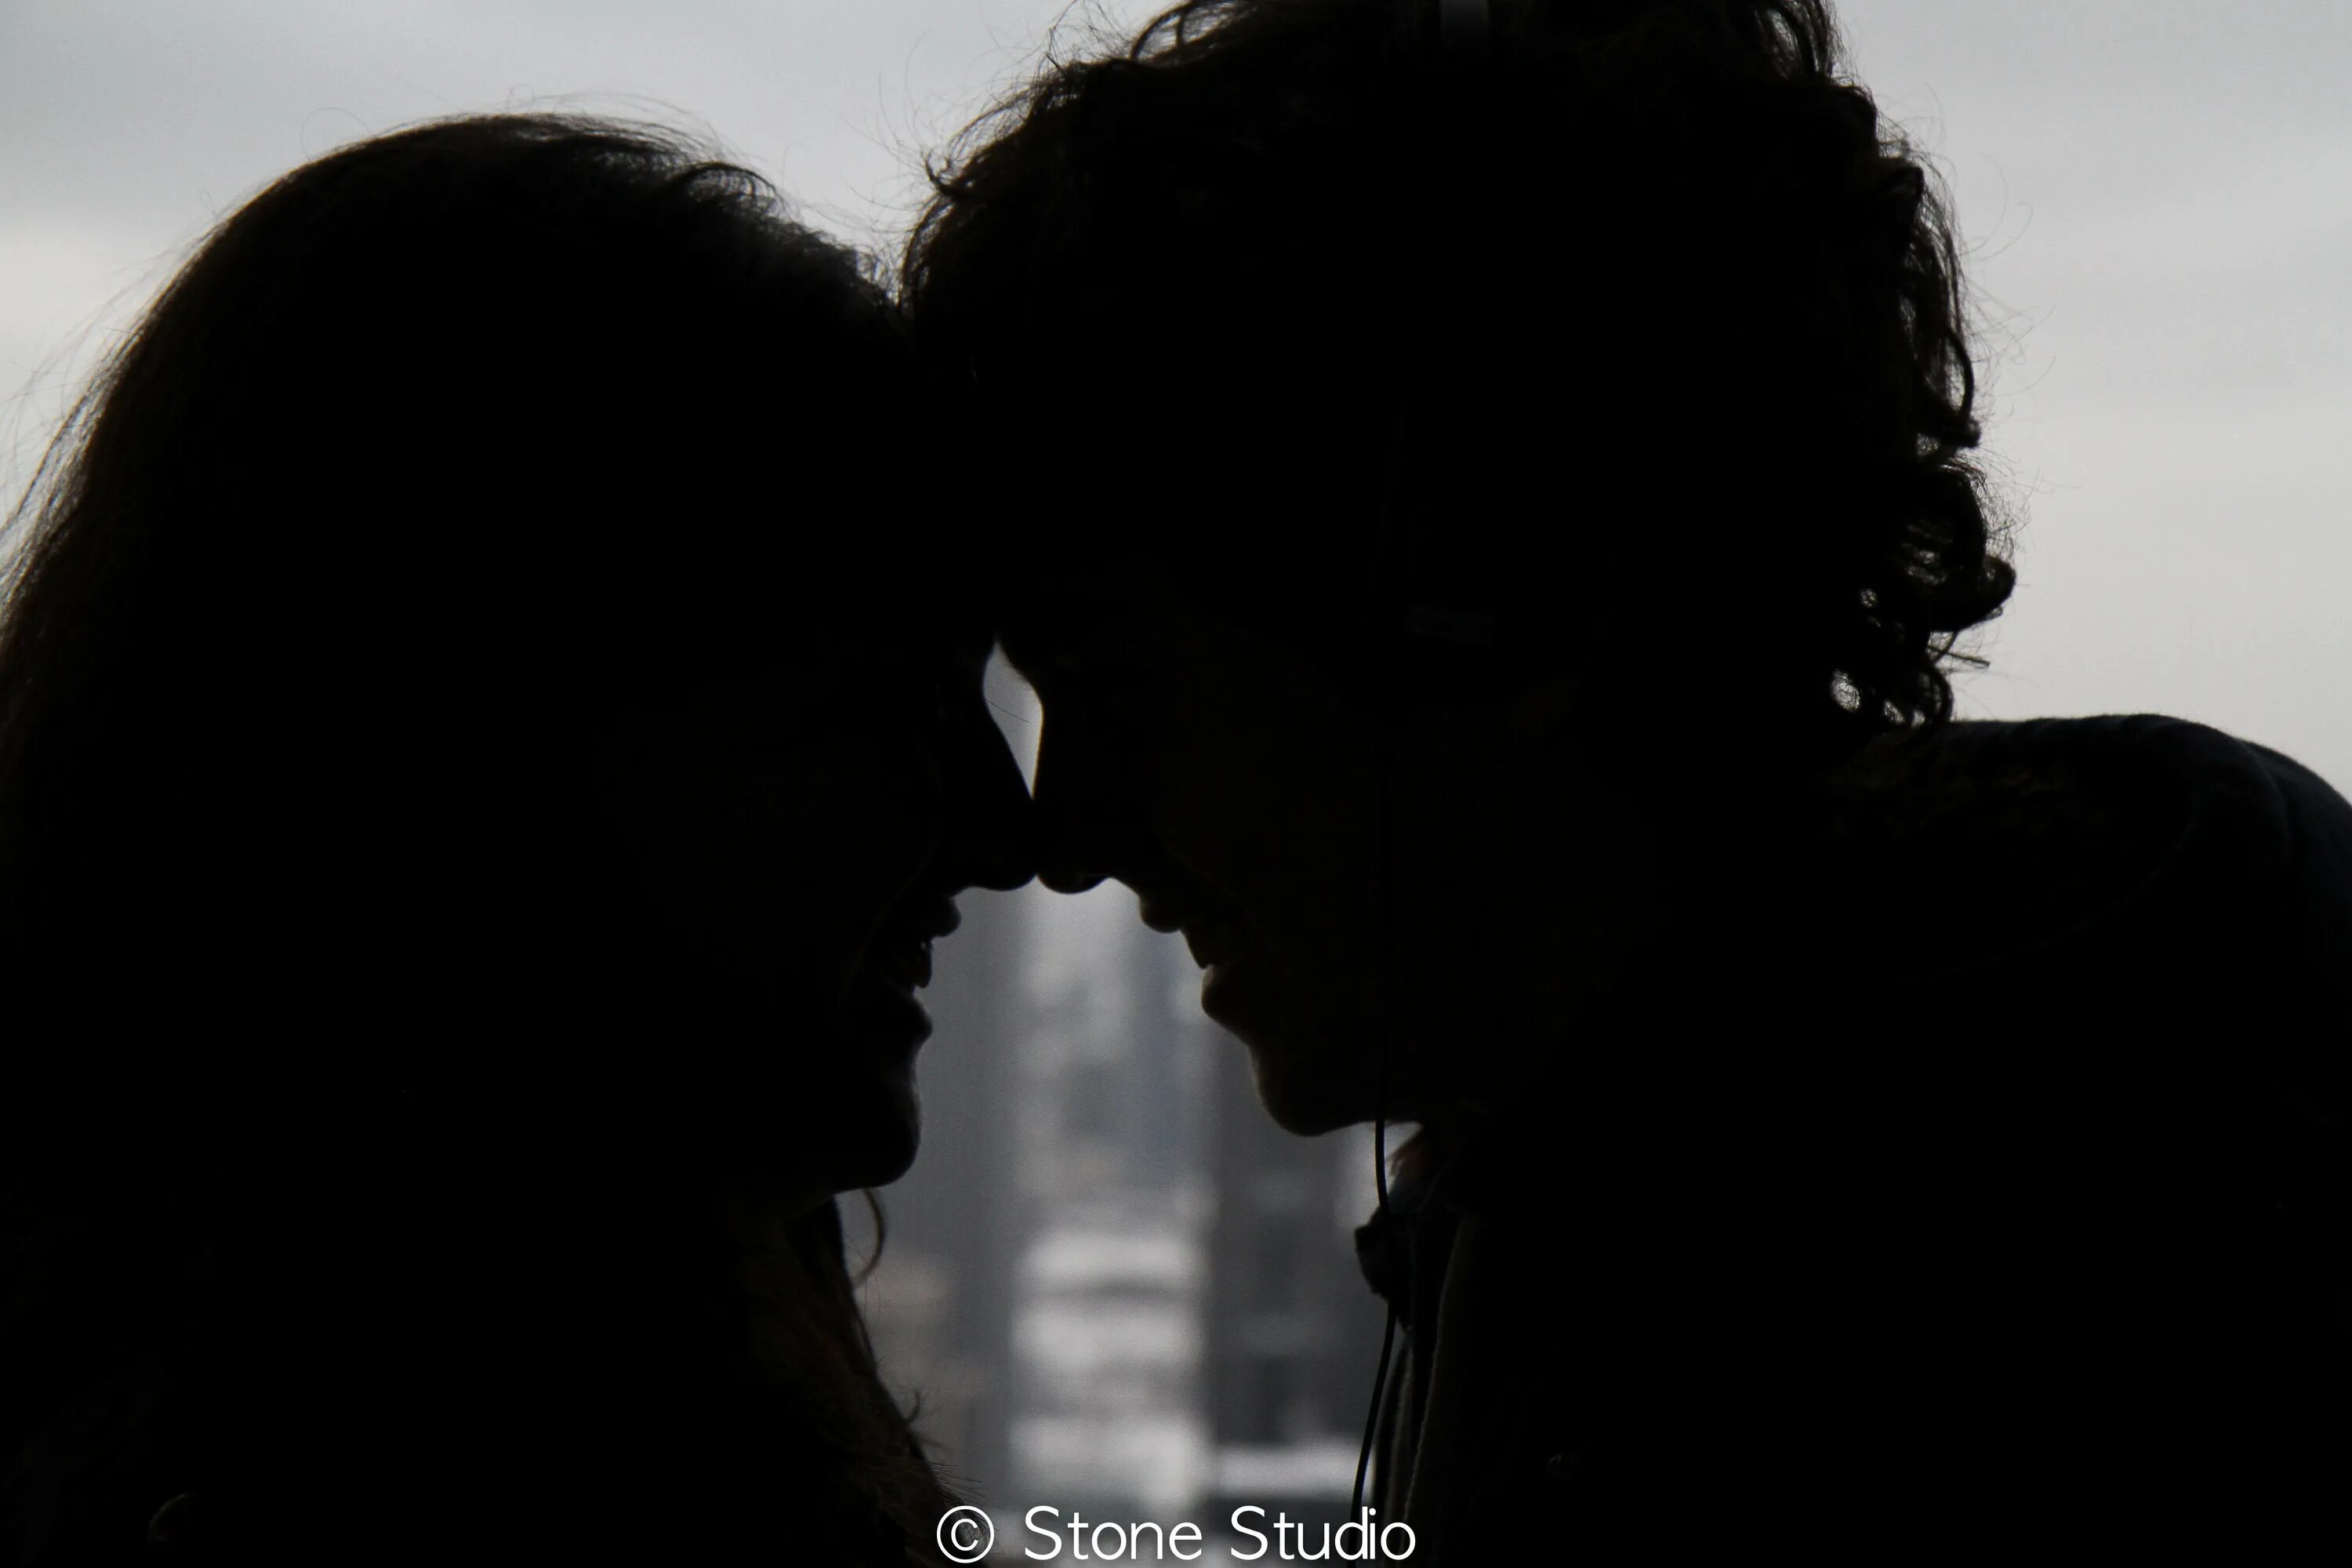 Поцелуй в темноте кандела. Поцелуй. Влюбленные в темноте. Поцелуи романтика черное. Влюбленные смотрят друг на друга.